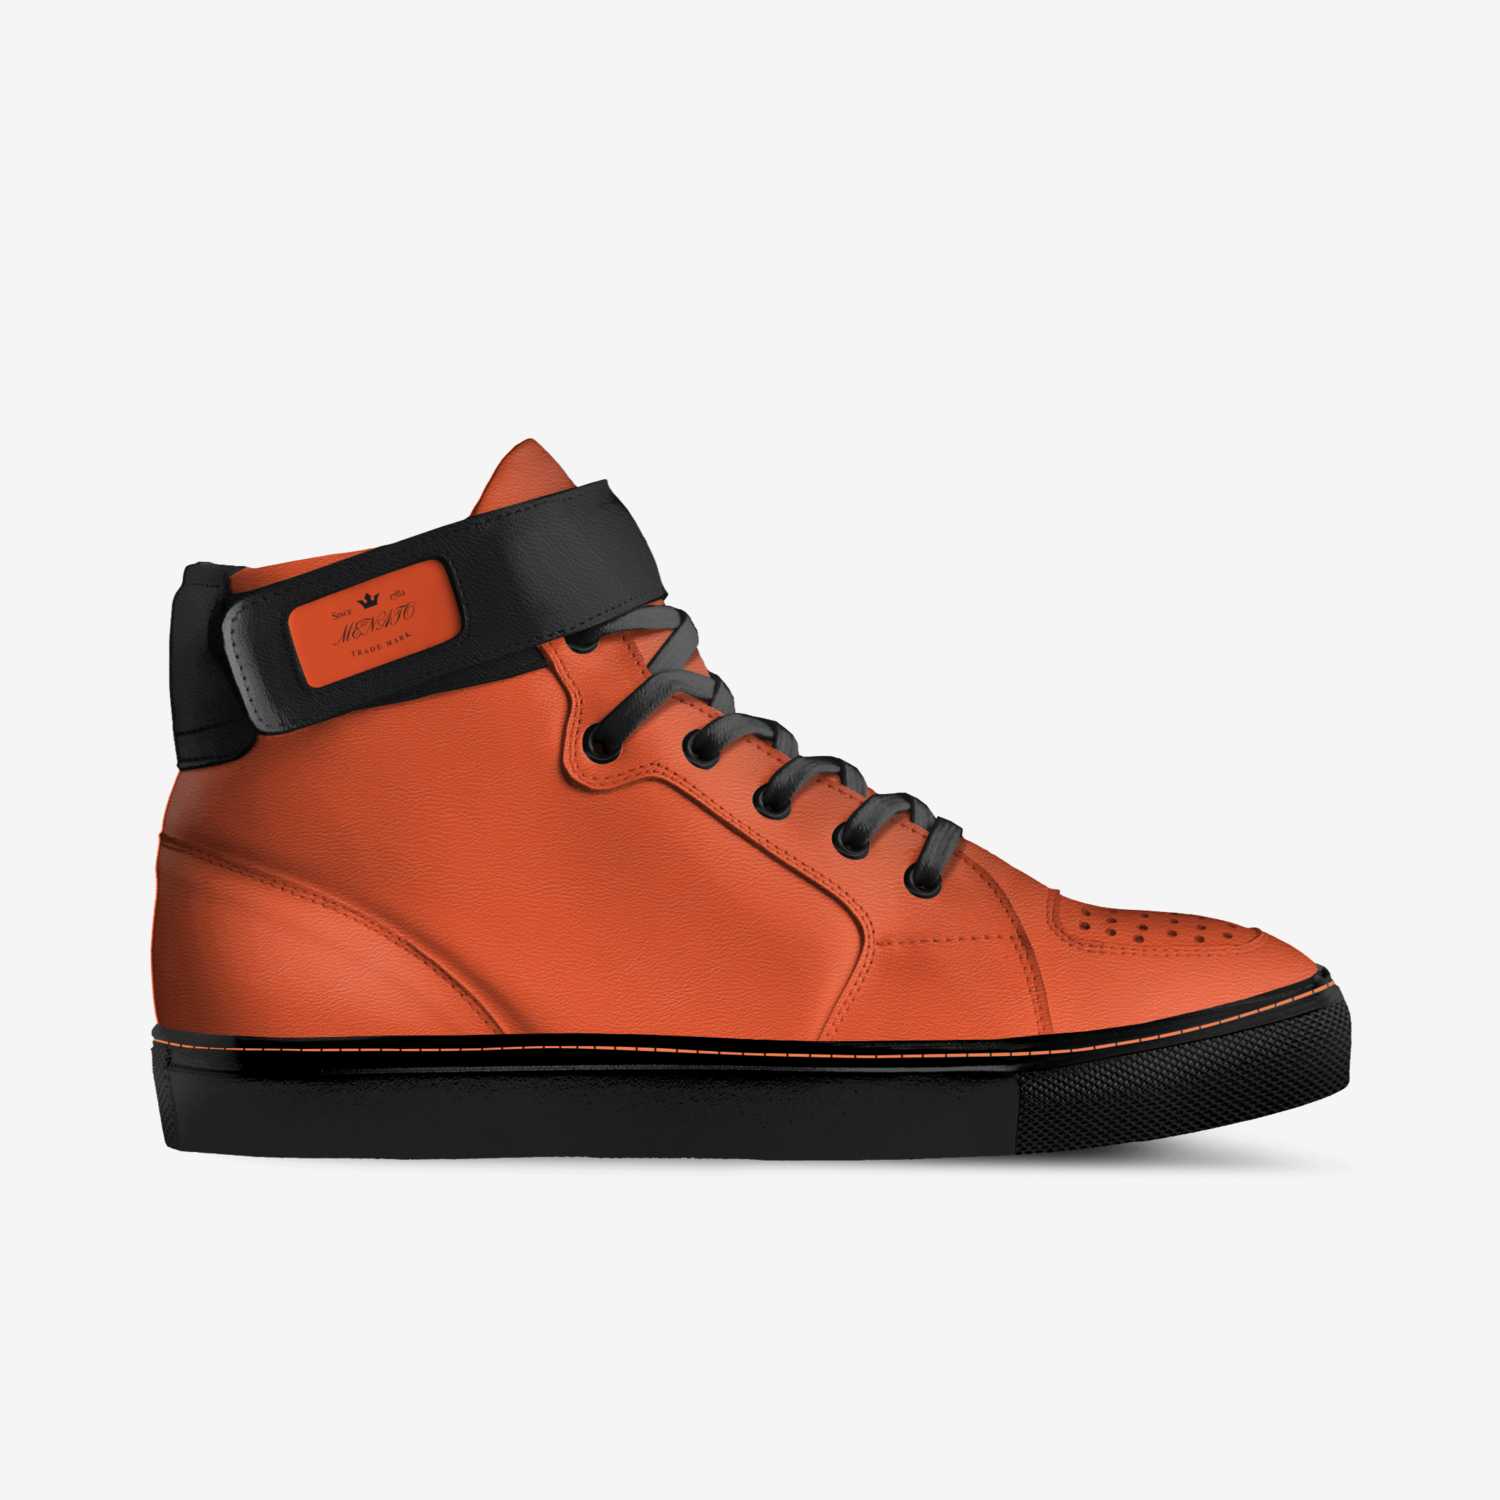 MENATO | A Custom Shoe concept by Alessandro Menato